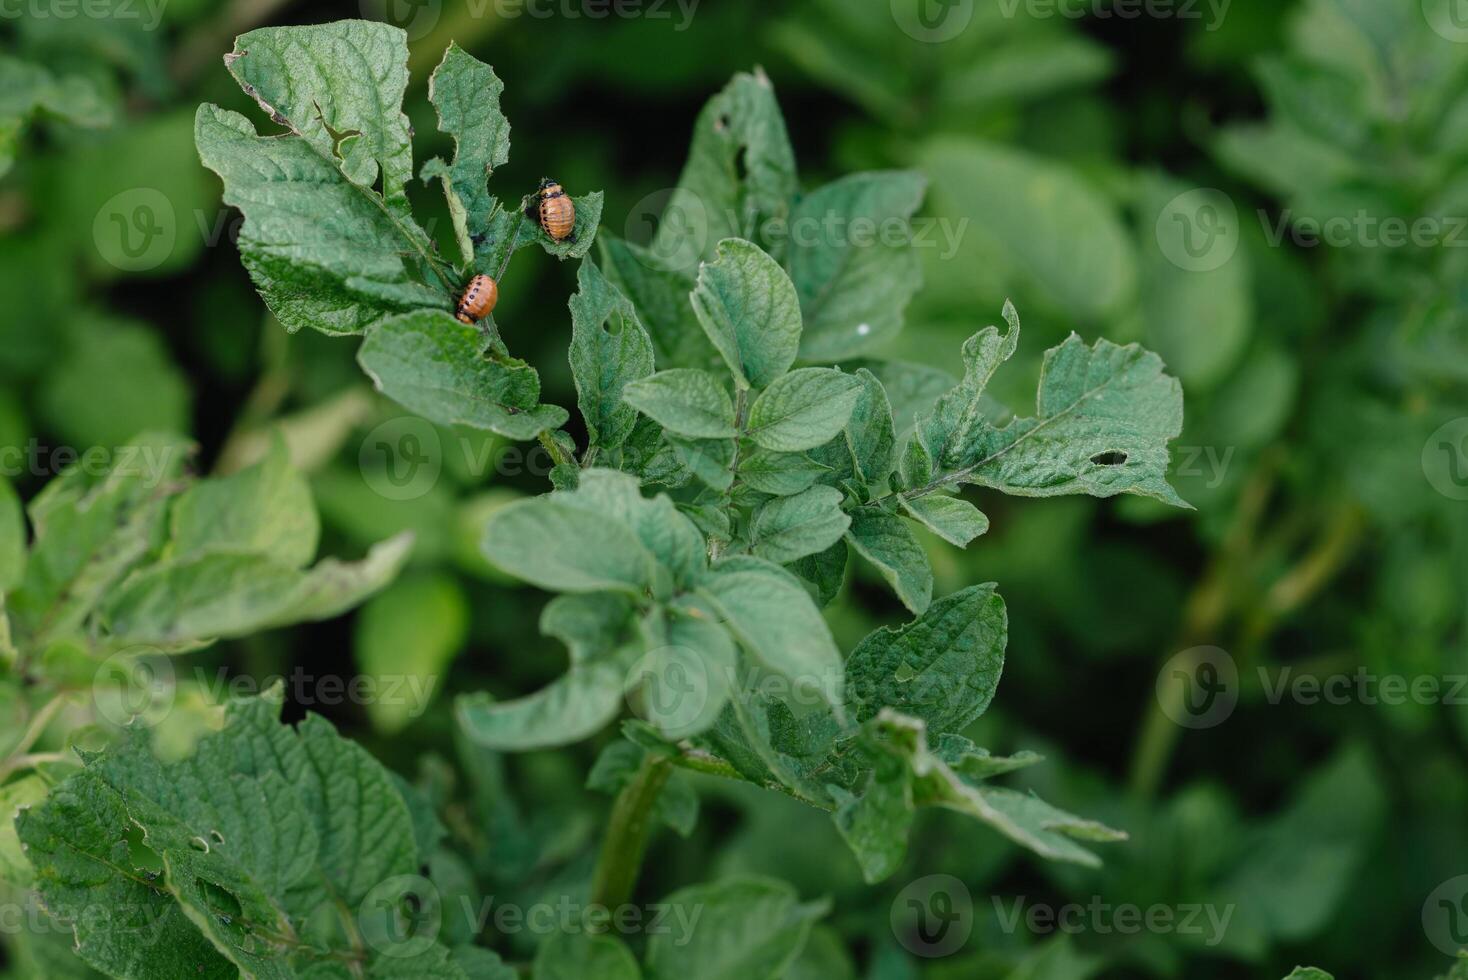 colorado potatis skalbagge larver är skadlig till lantbruk. skadedjur. röd skalbaggar äta potatisar. skämma bort de grön löv och skörda foto